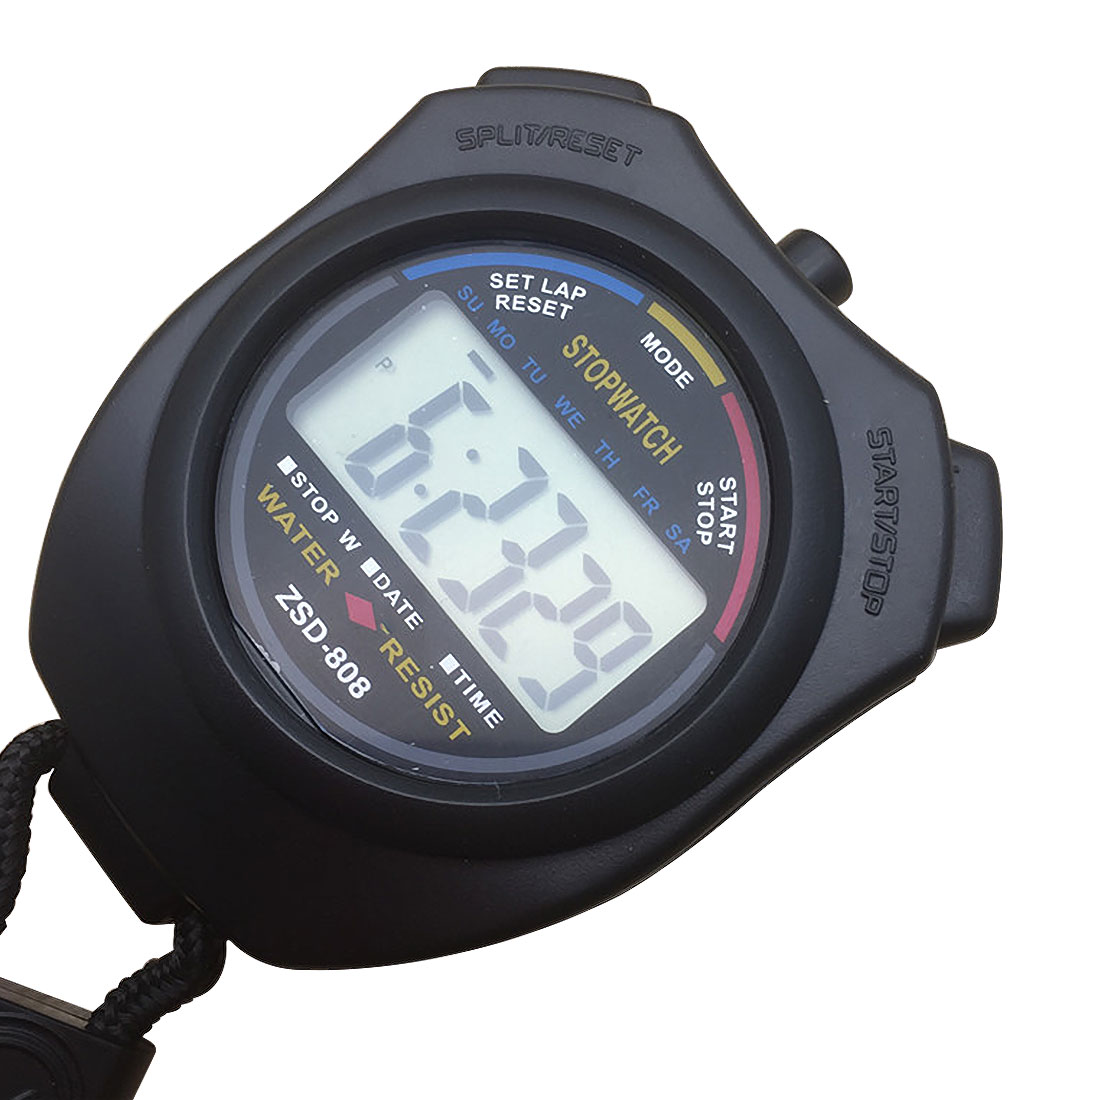 Cronómetro deportivo ABS resistente al agua, cronómetro Digital LCD de mano con cadena